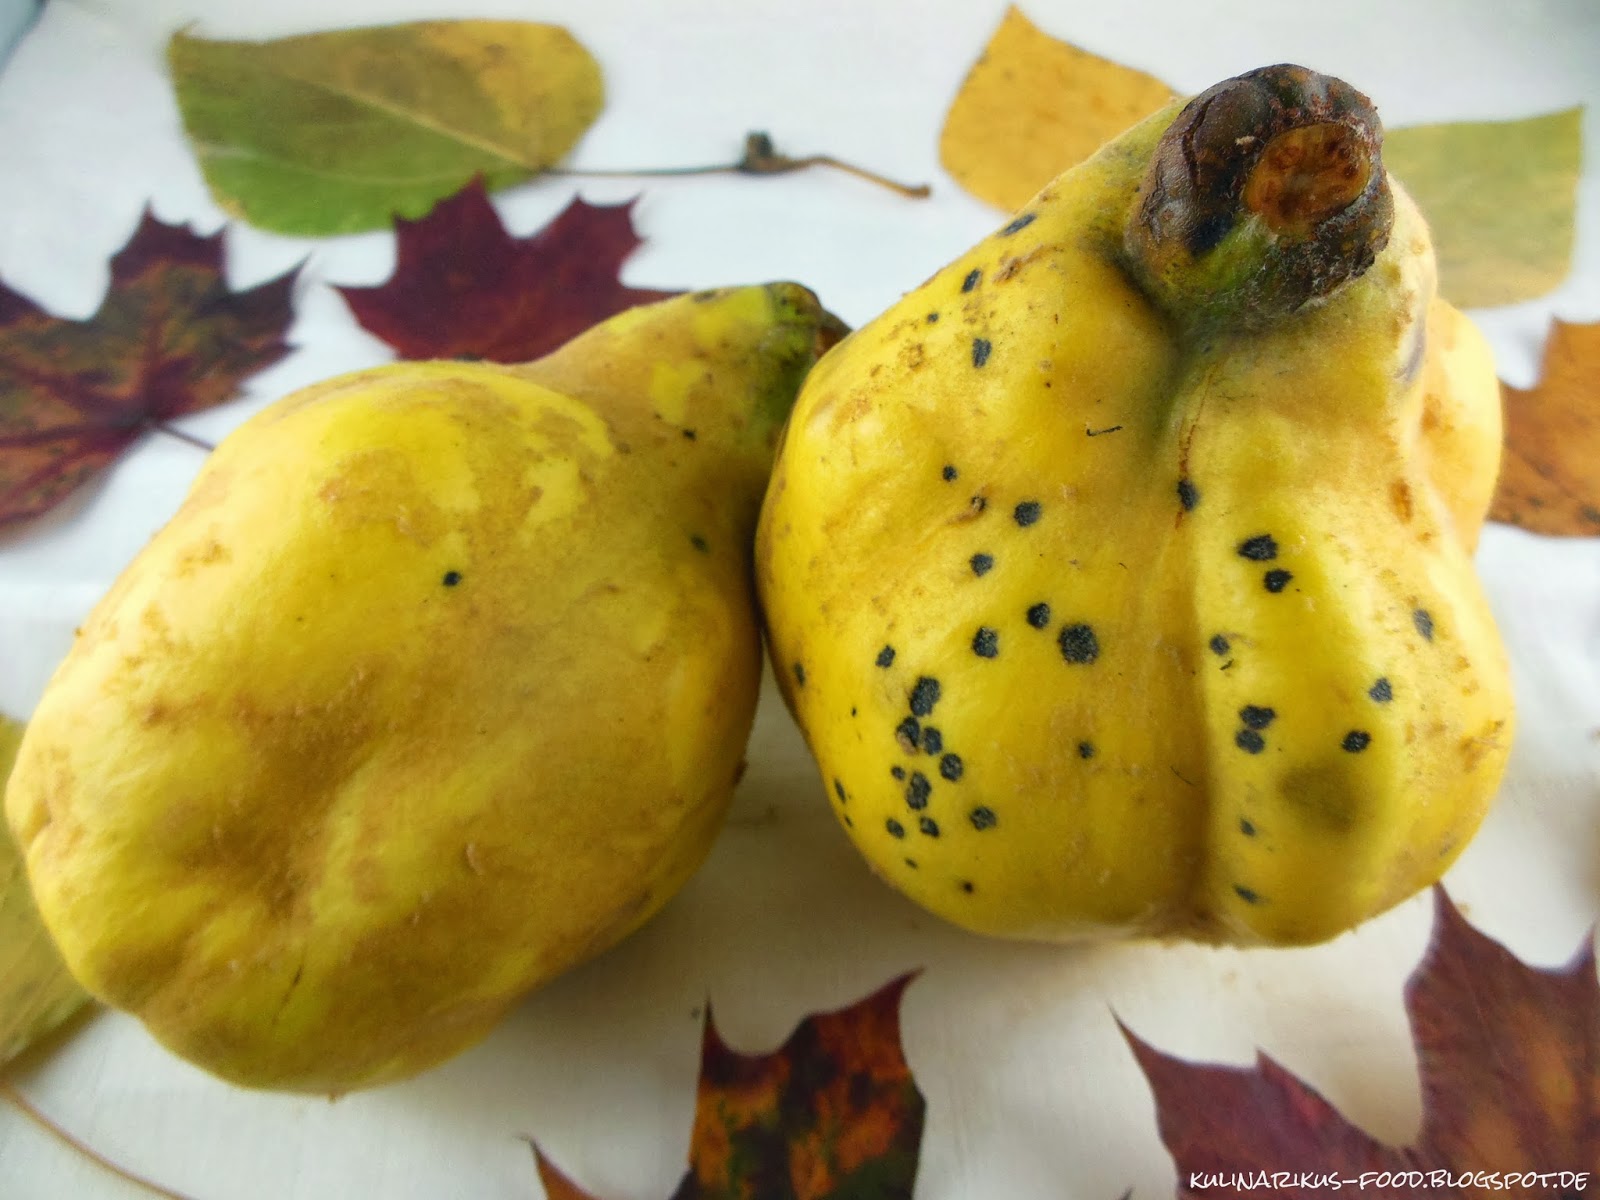 Kulinarikus: Golden wie der Herbst: Weiche, duftende Quitten mit